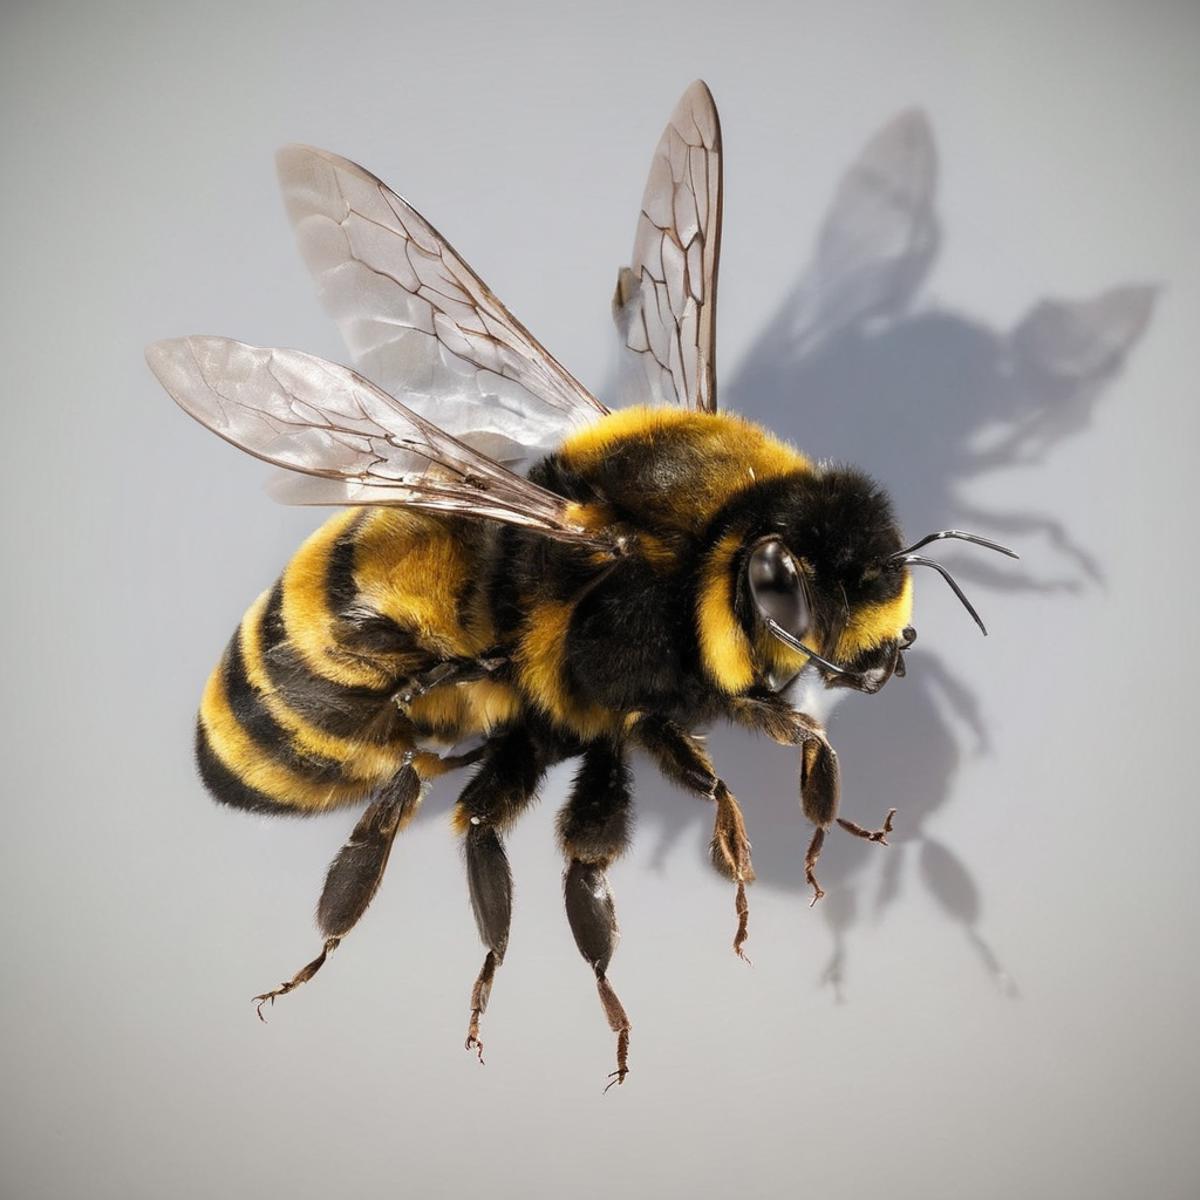 Bee. SDXL image by Sa_May